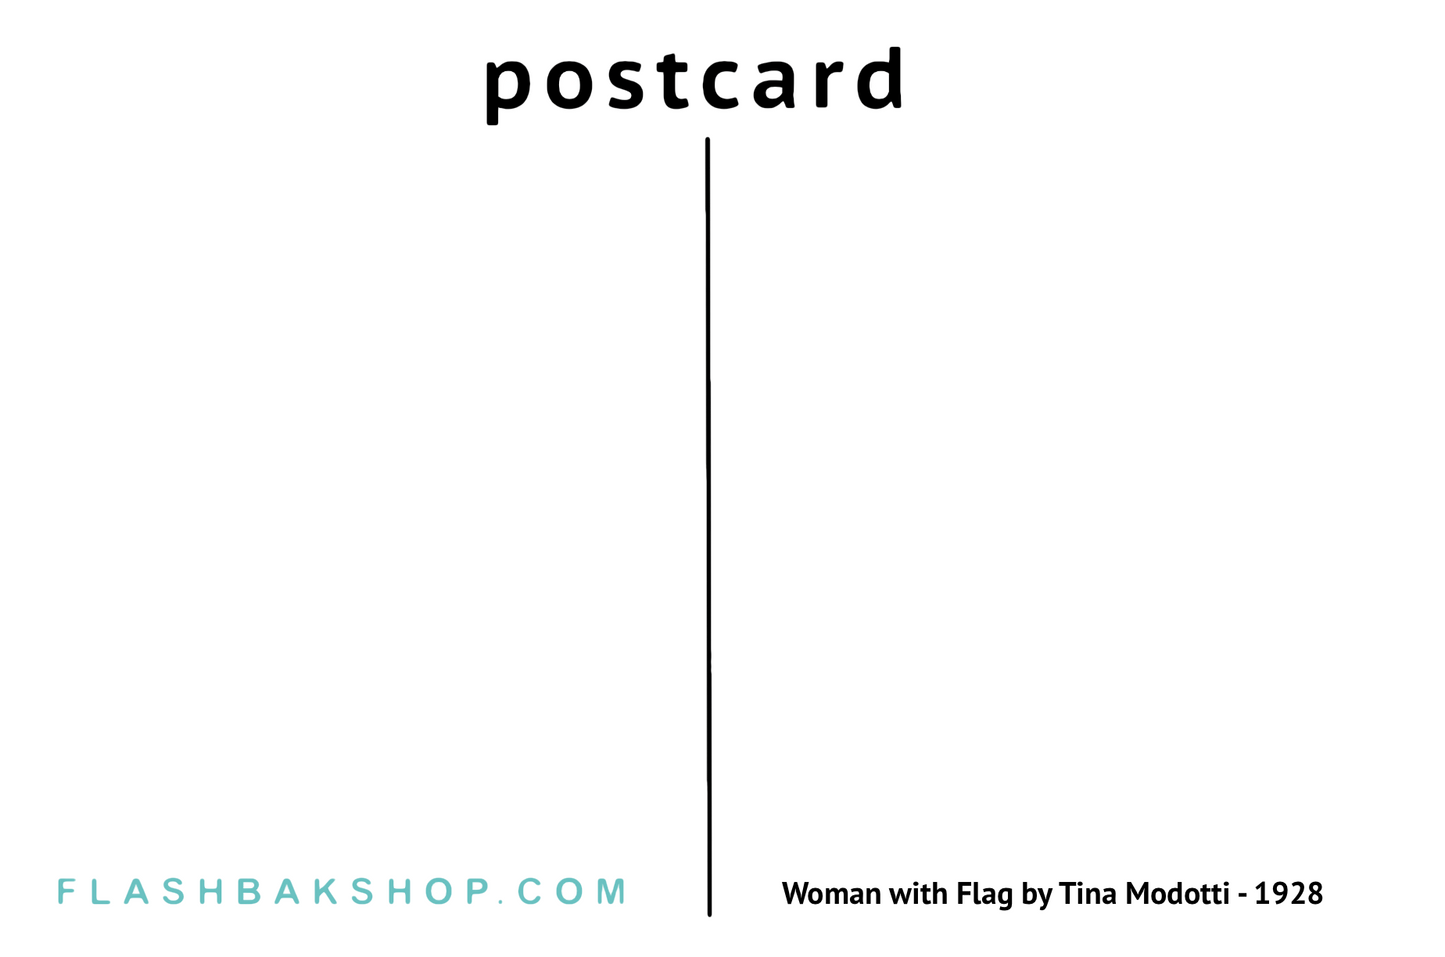 Femme au drapeau de Tina Modotti - 1928 - Carte postale